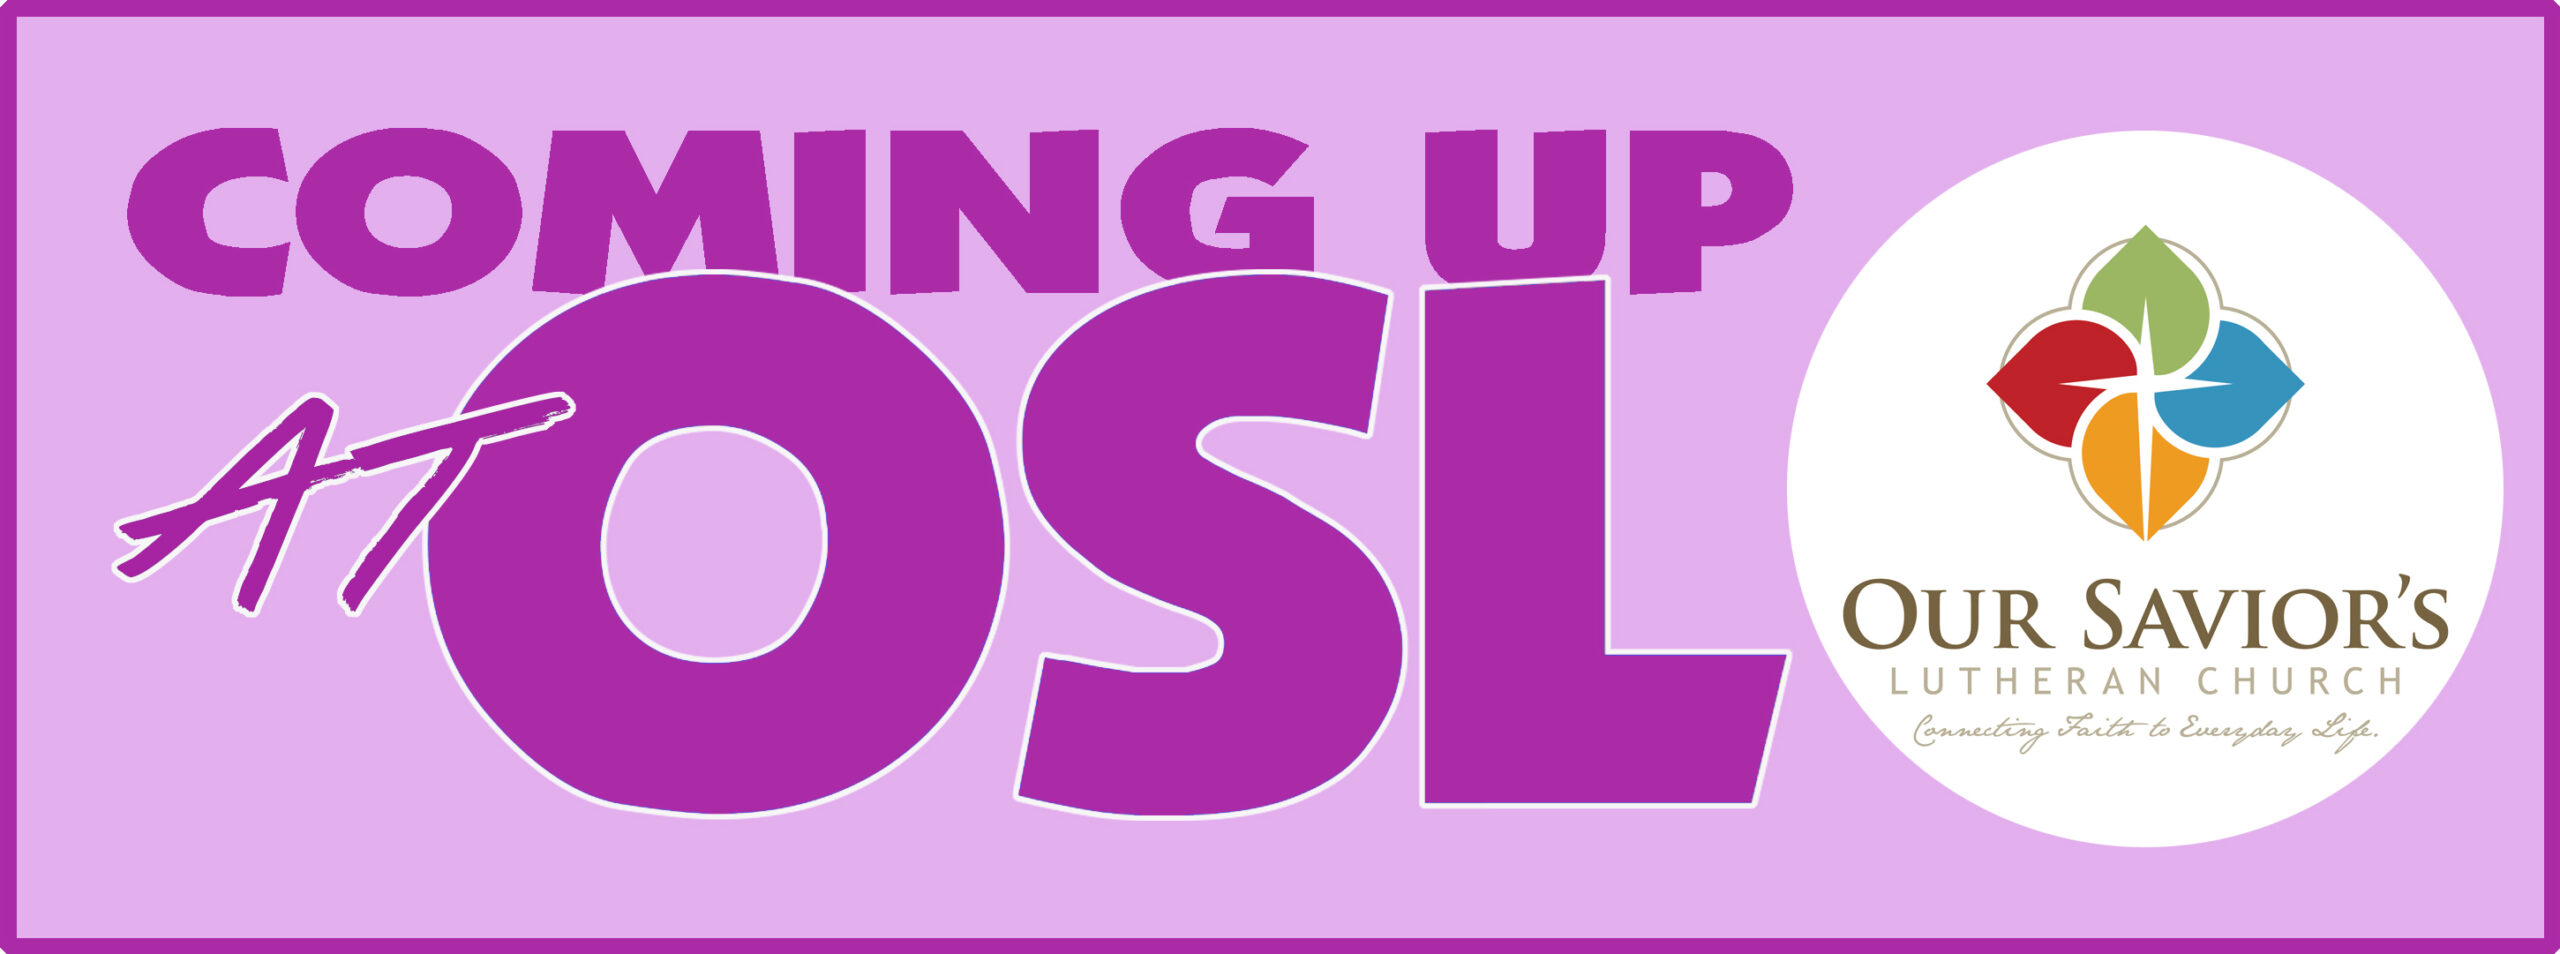 Coming up at OSL logo